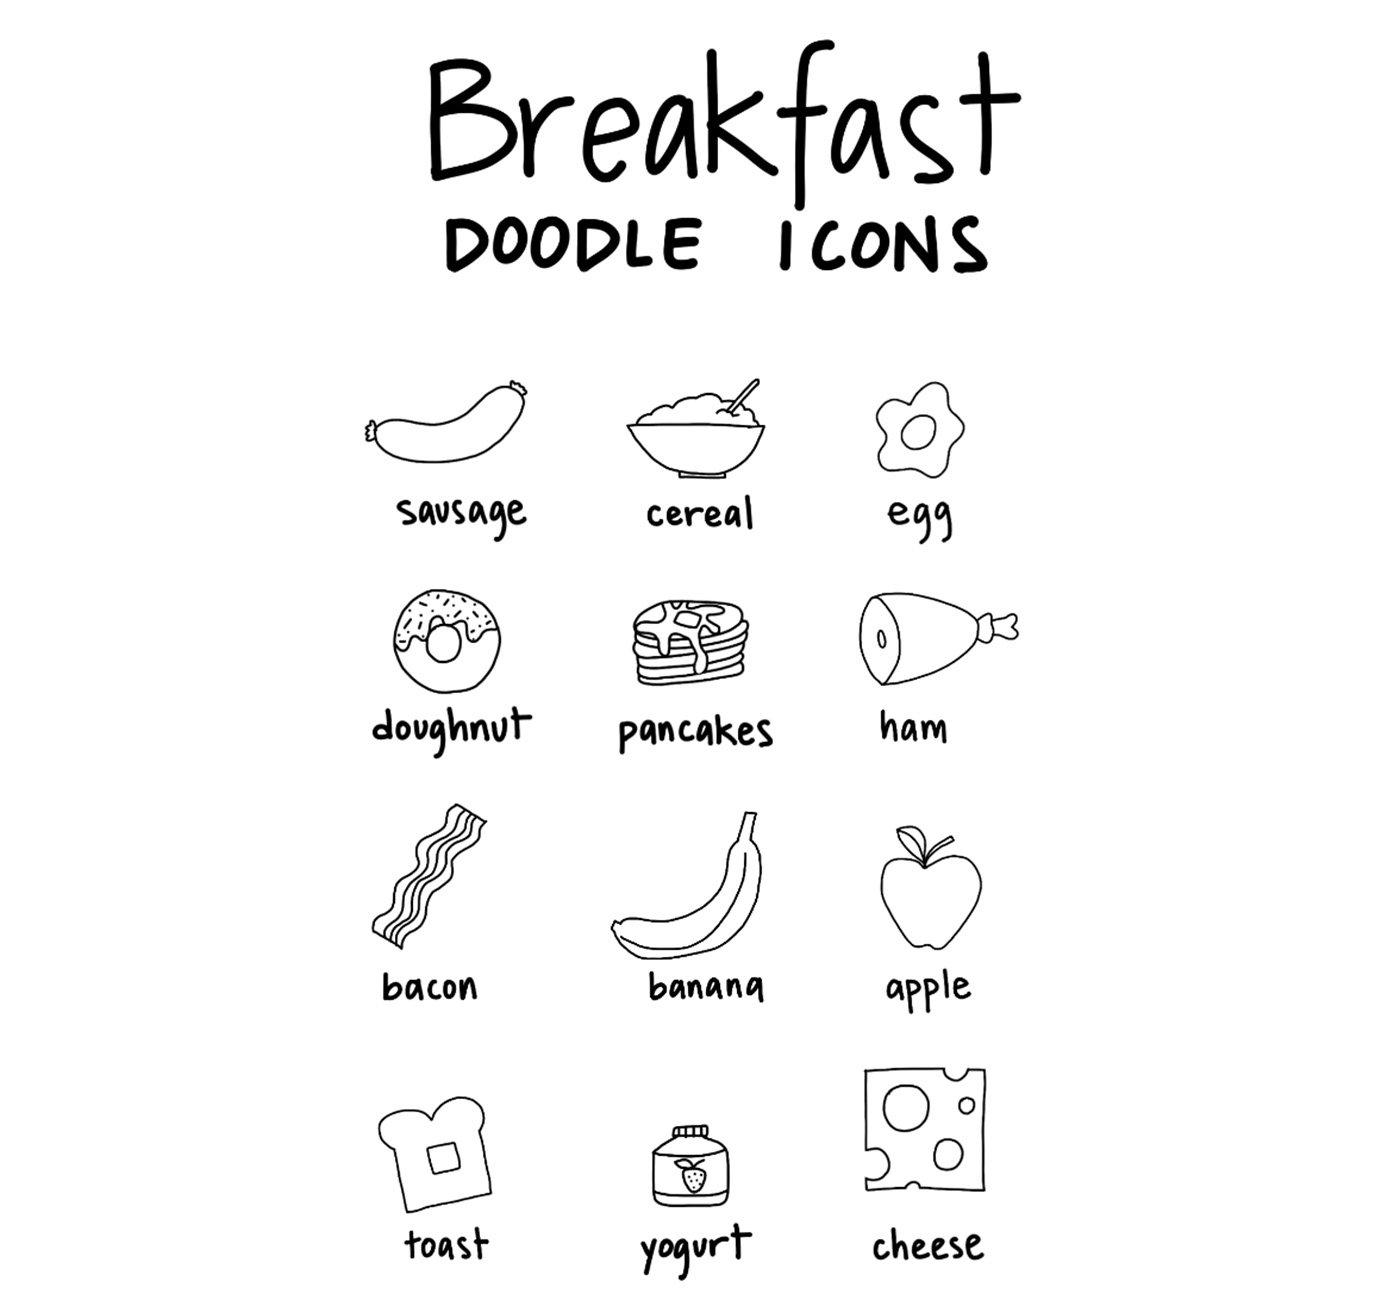 https://www.skillshare.com/blog/wp-content/uploads/2022/08/breakfast-doodles.jpg?w=1024